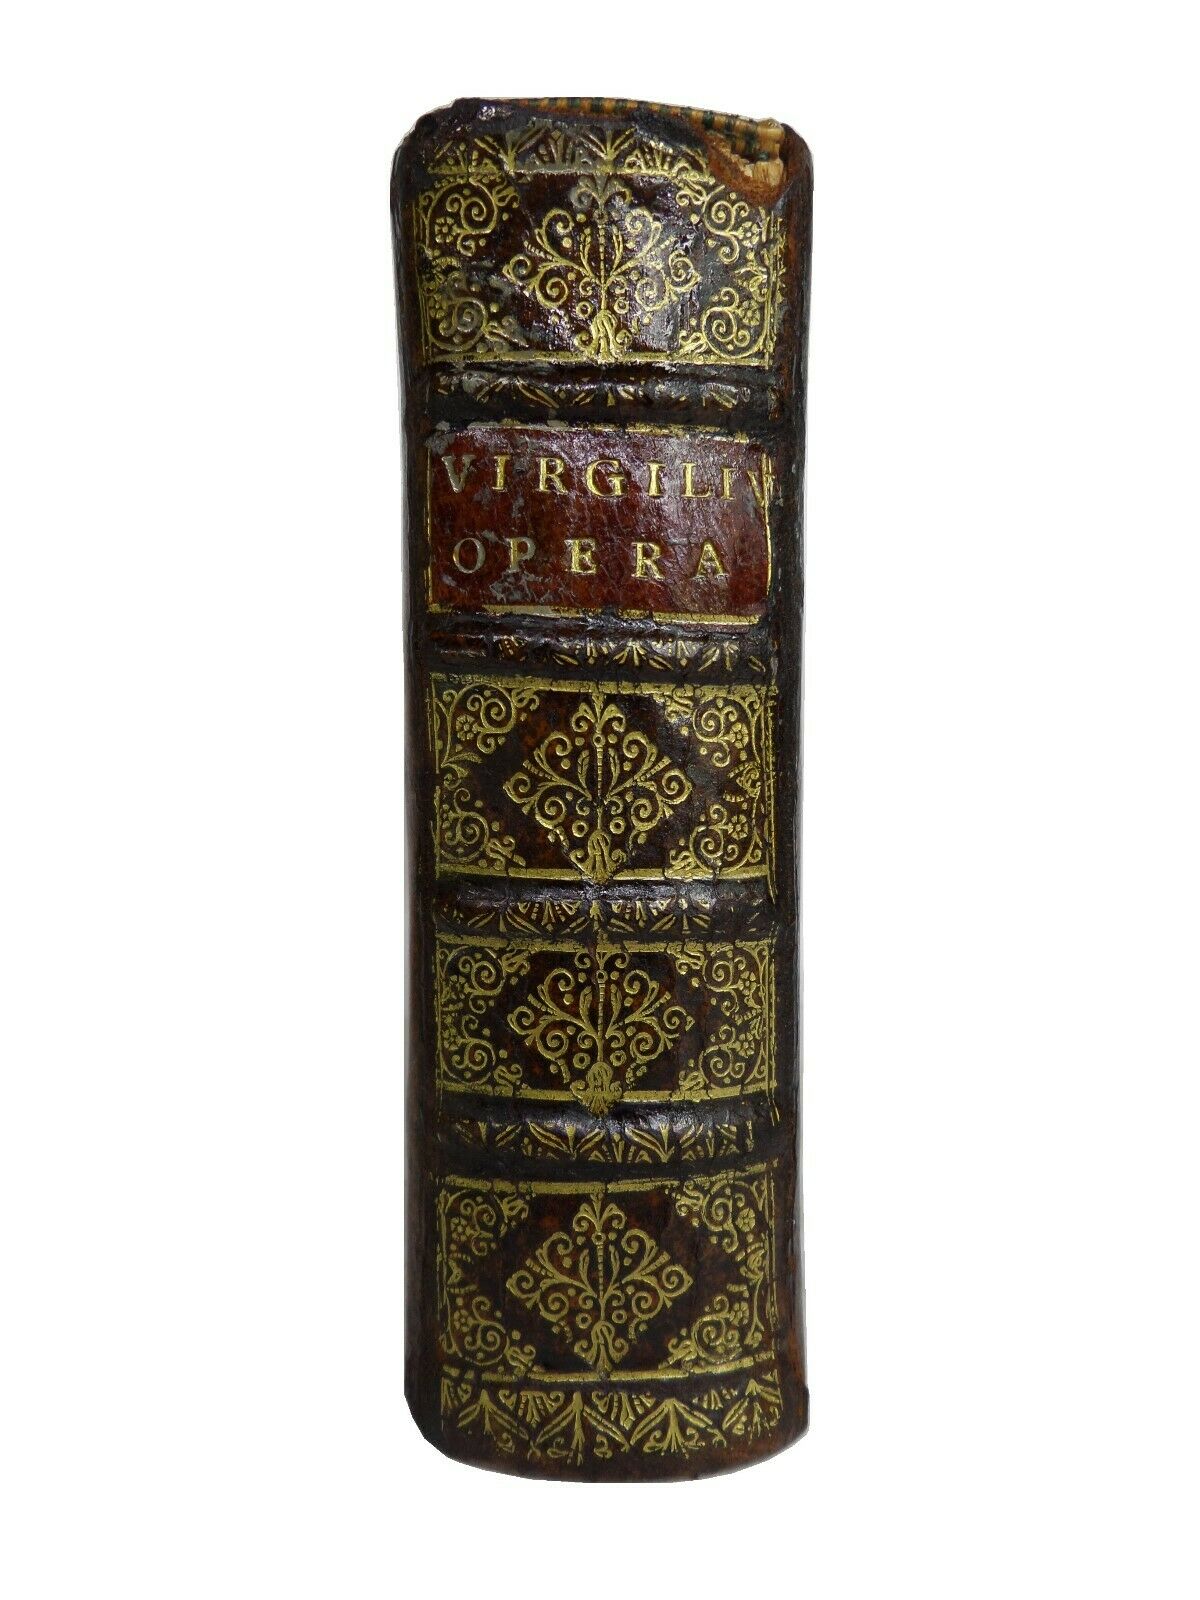 THE WORKS OF VIRGIL, HORACE, JUVENAL & PERSIUS 1586 COEVAL BINDING 3 WORKS IN 1